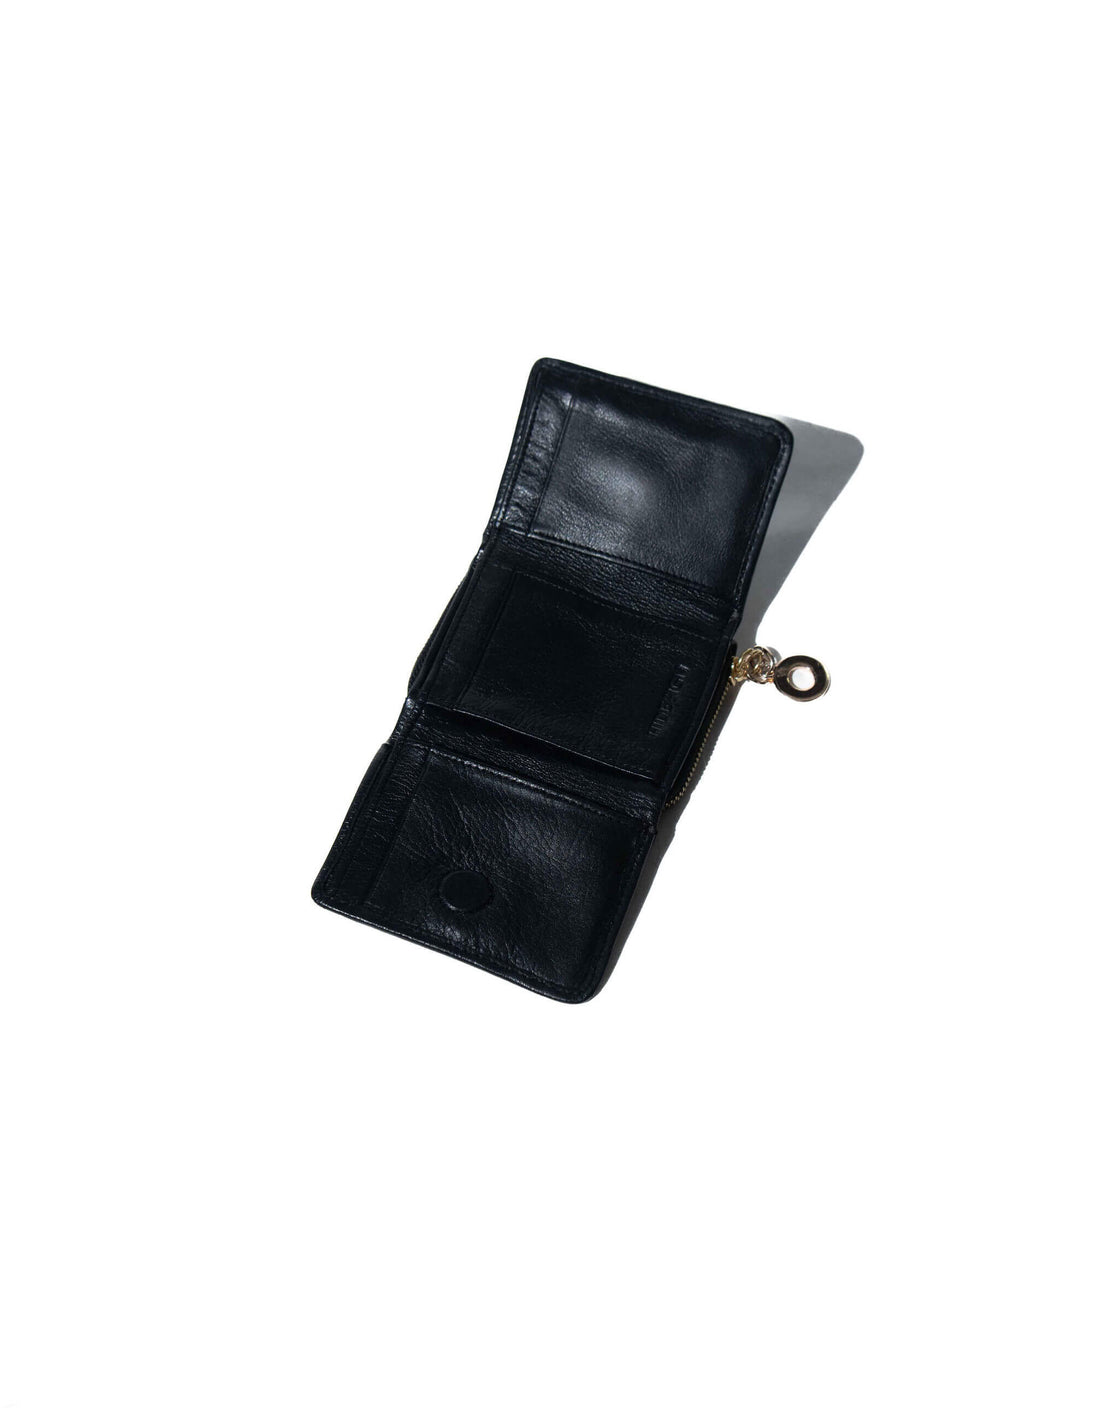 Cognac - Tri fold wallet